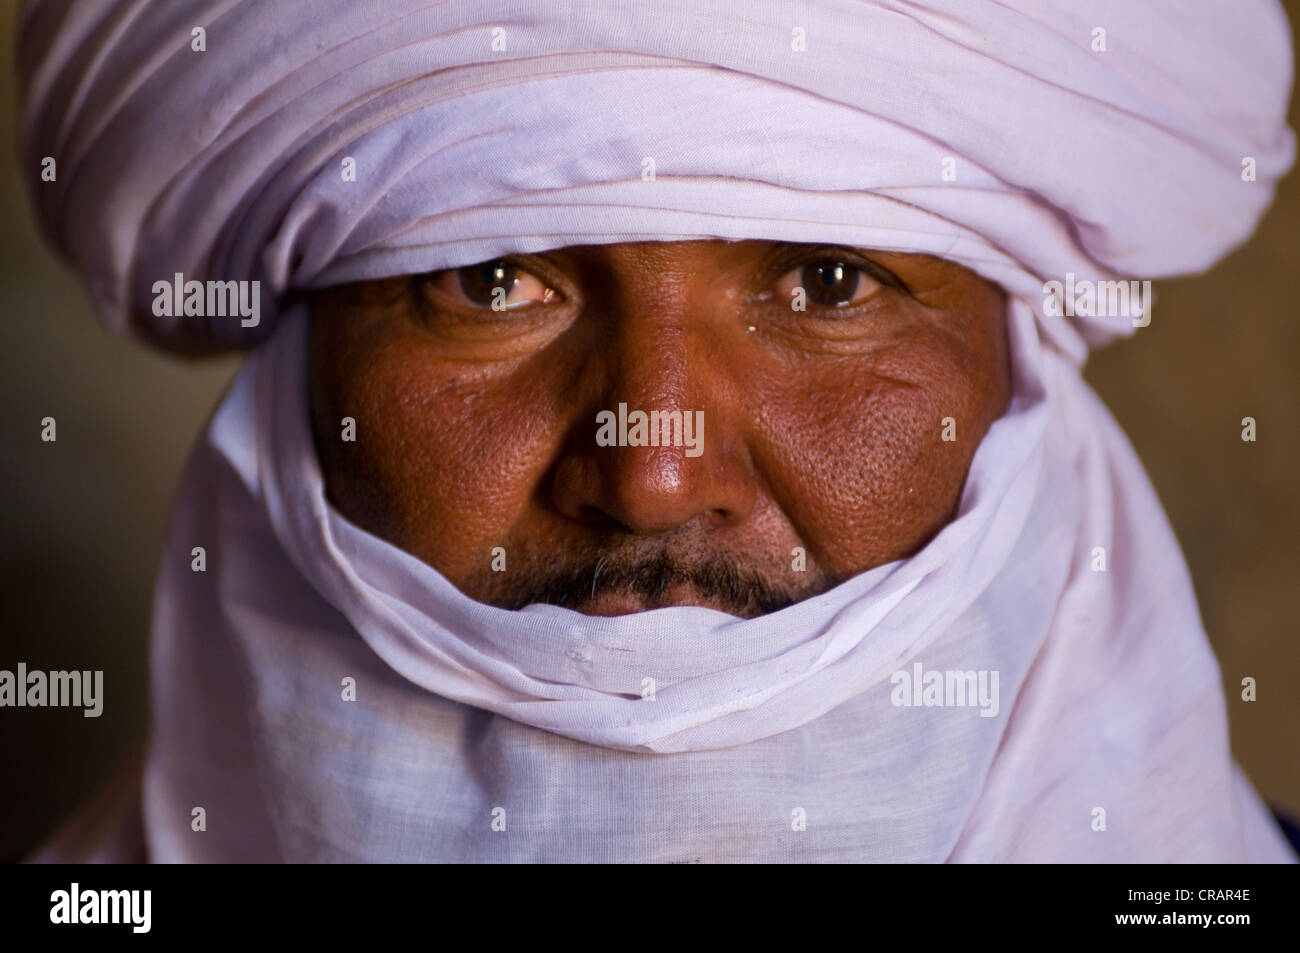 Touareg autochtones man, portrait, l'Algérie, l'Afrique Banque D'Images